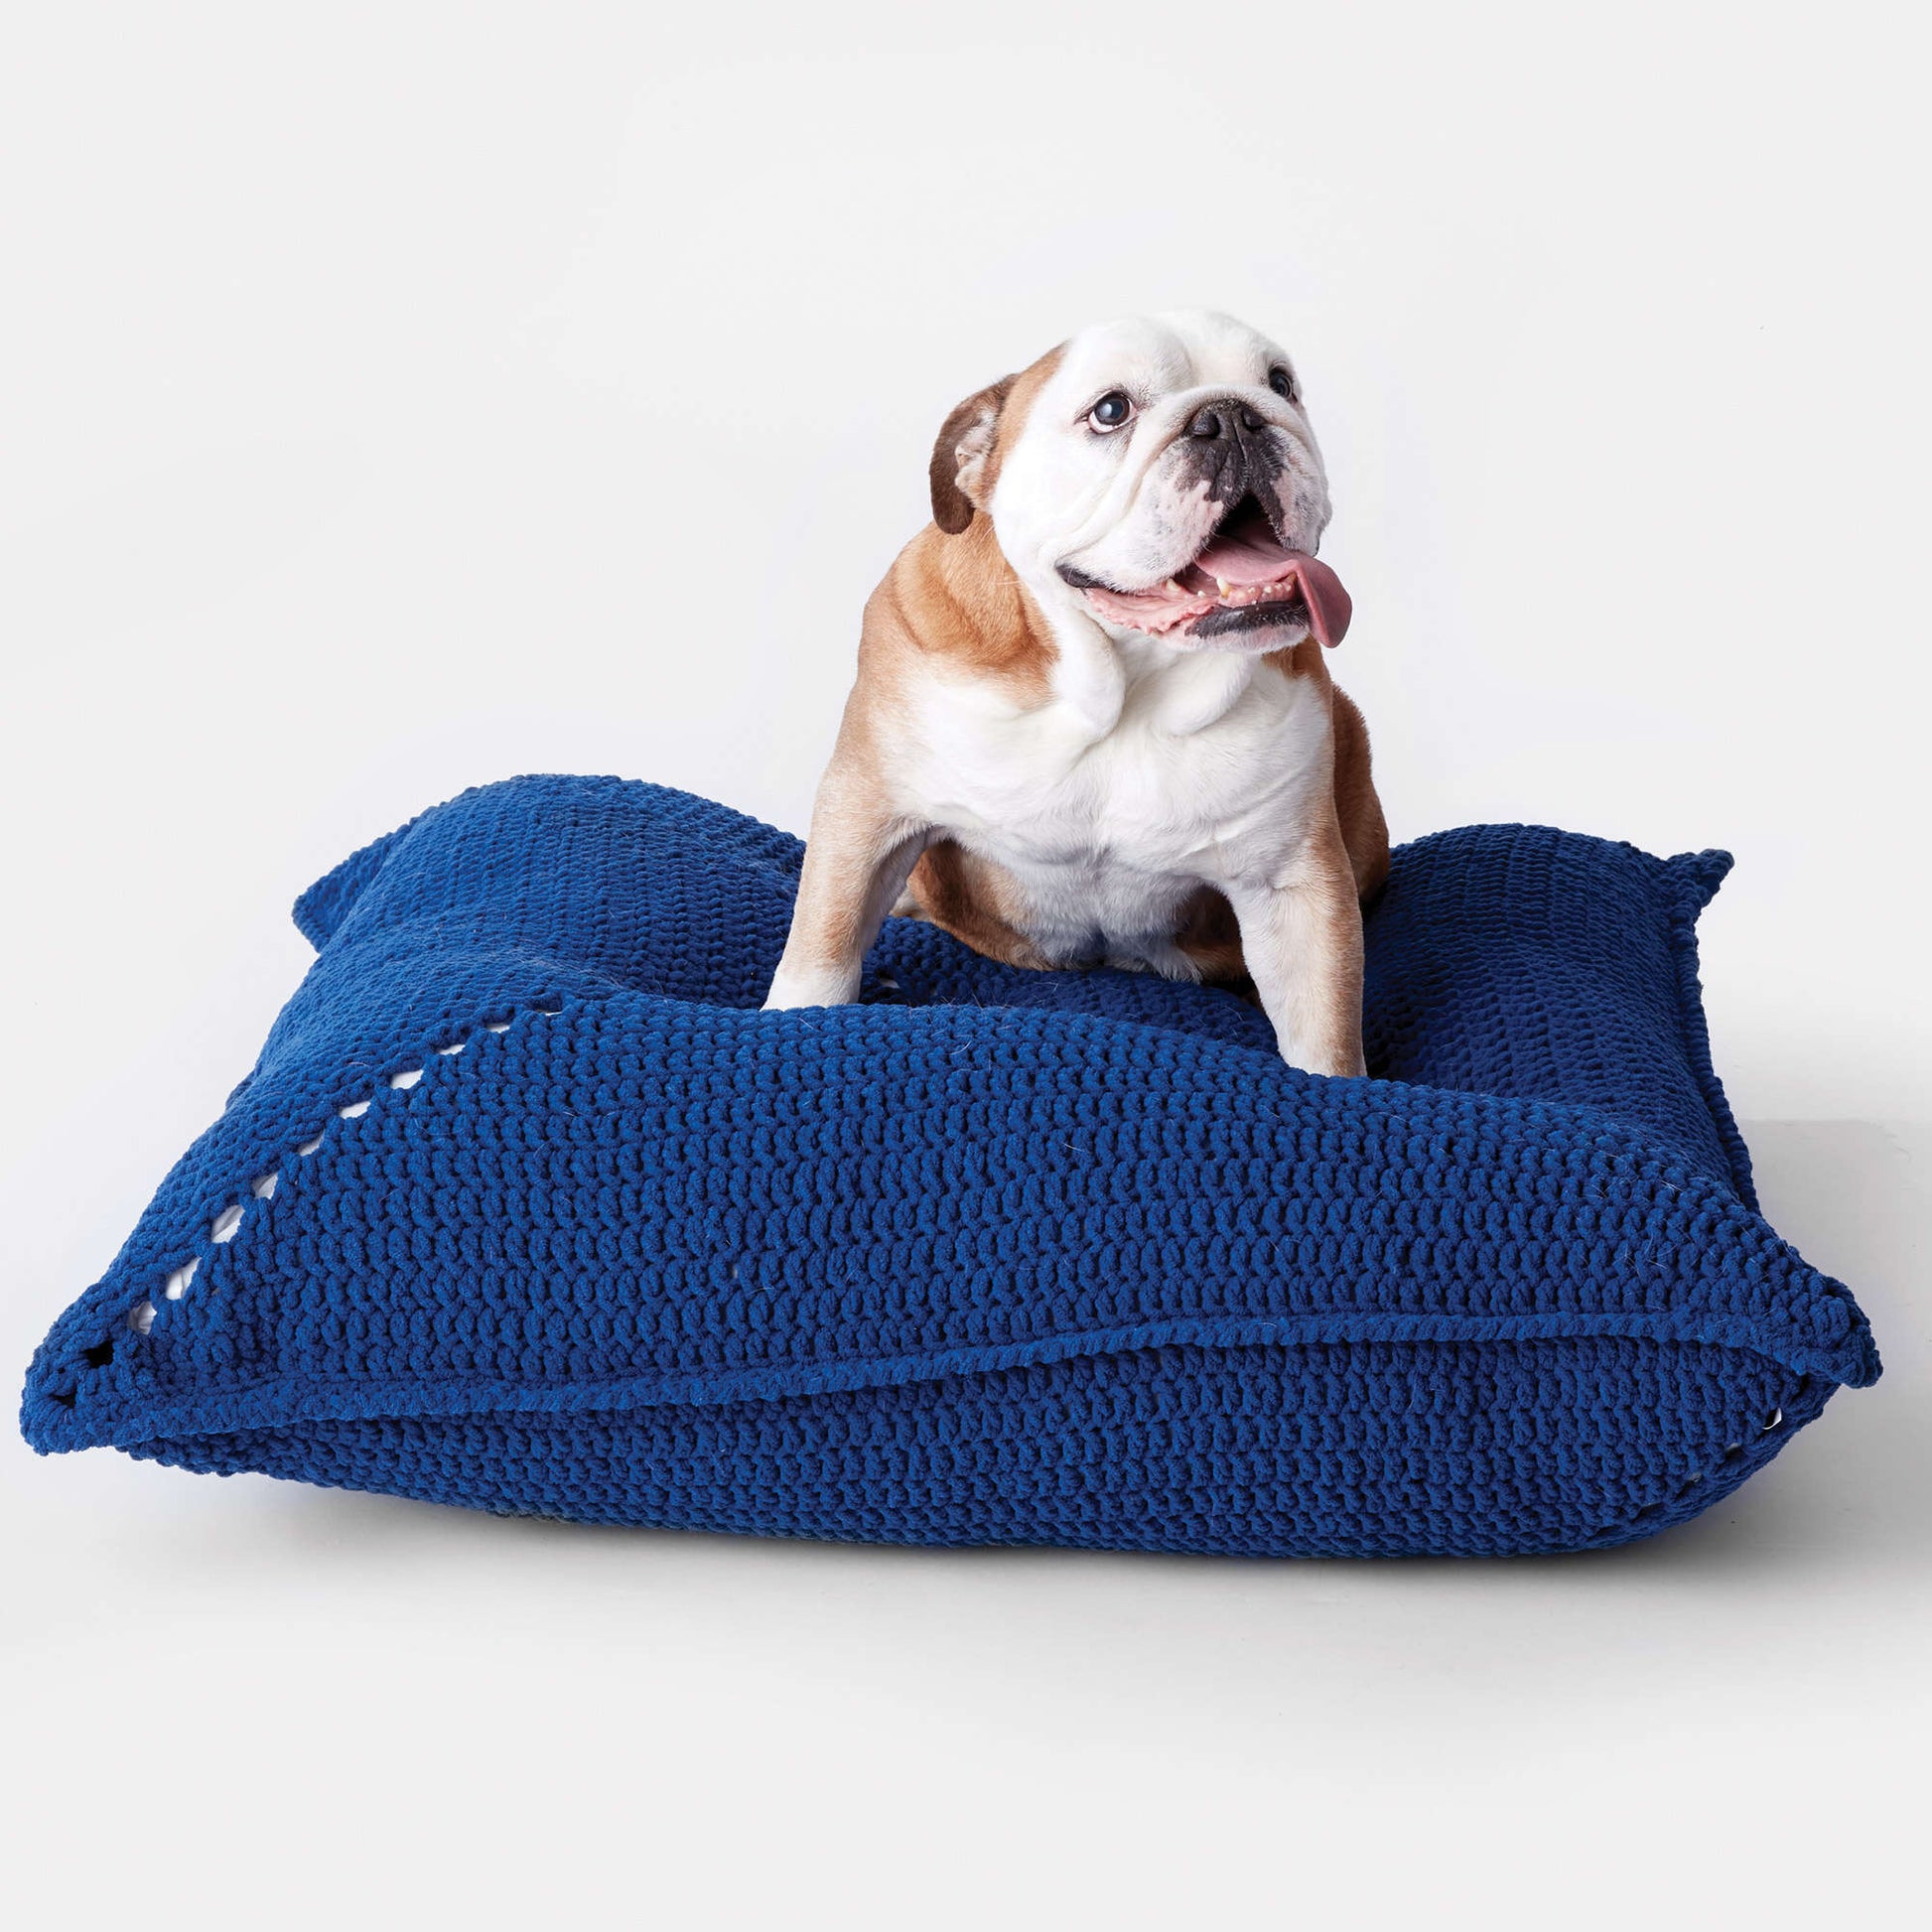 Free Bernat Easy Crochet Pet Bed Pattern